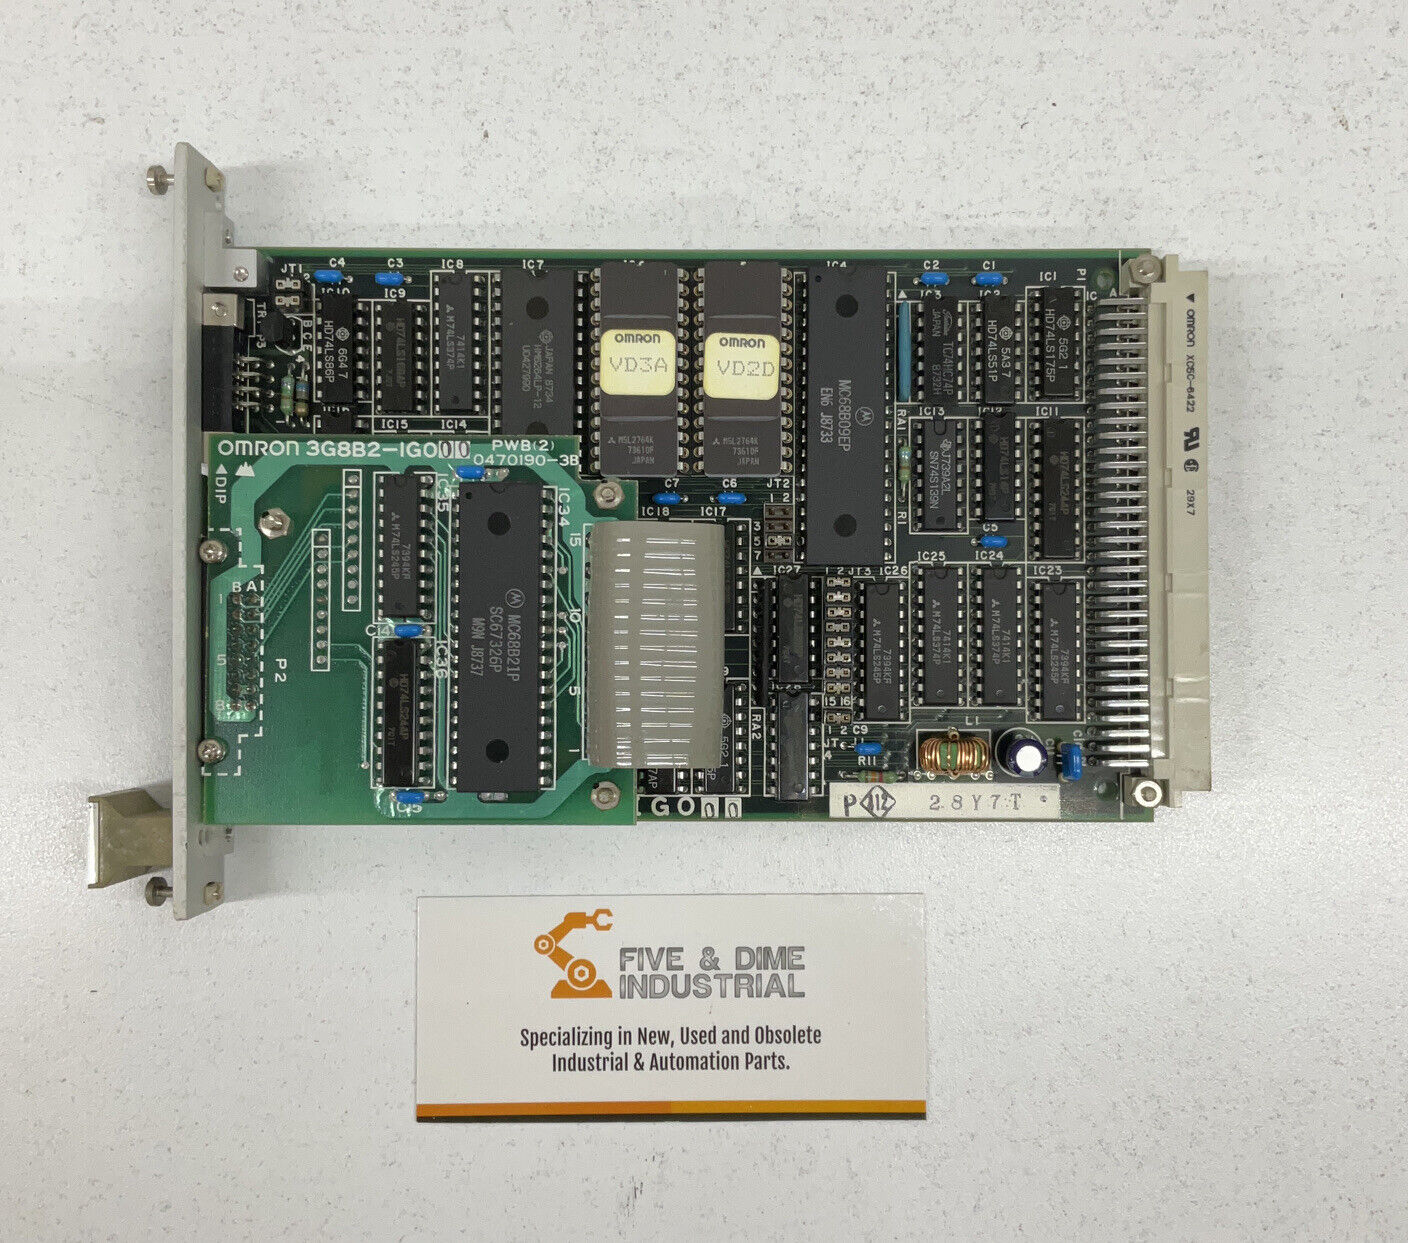 OMRON 3G8B2-IGO00 New Interface Board Card Module (CB106)